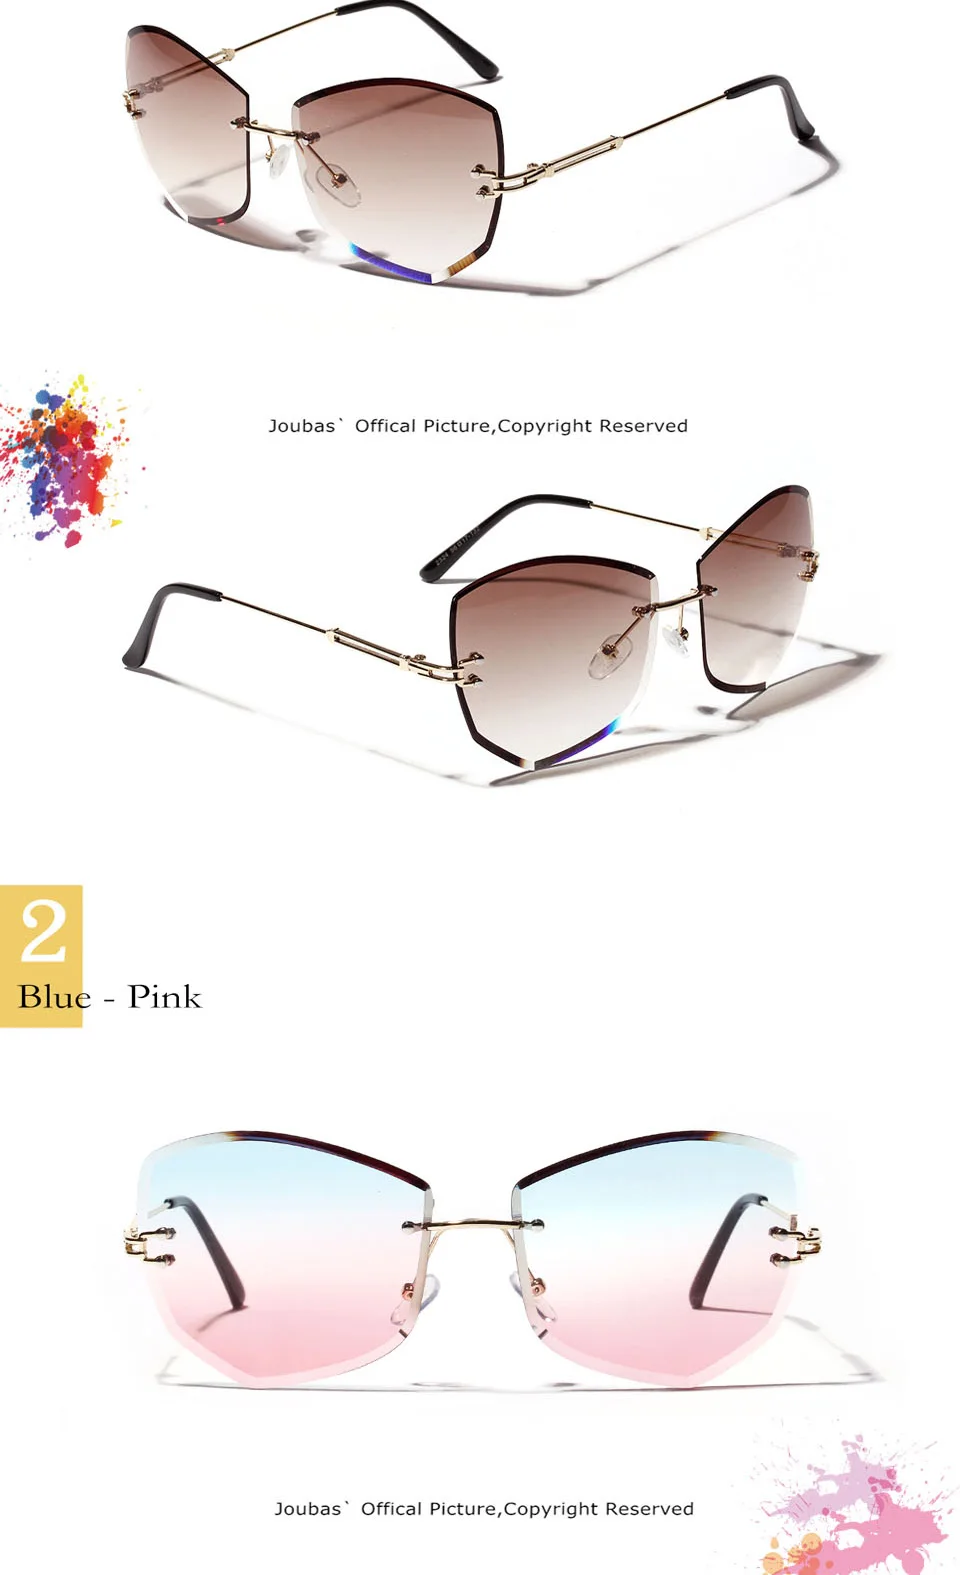 Joubas Cateye оправы солнцезащитных очков Для женщин/Для мужчин 2019 высокое качество выполненные градиент солнцезащитные очки Полигон оттенки